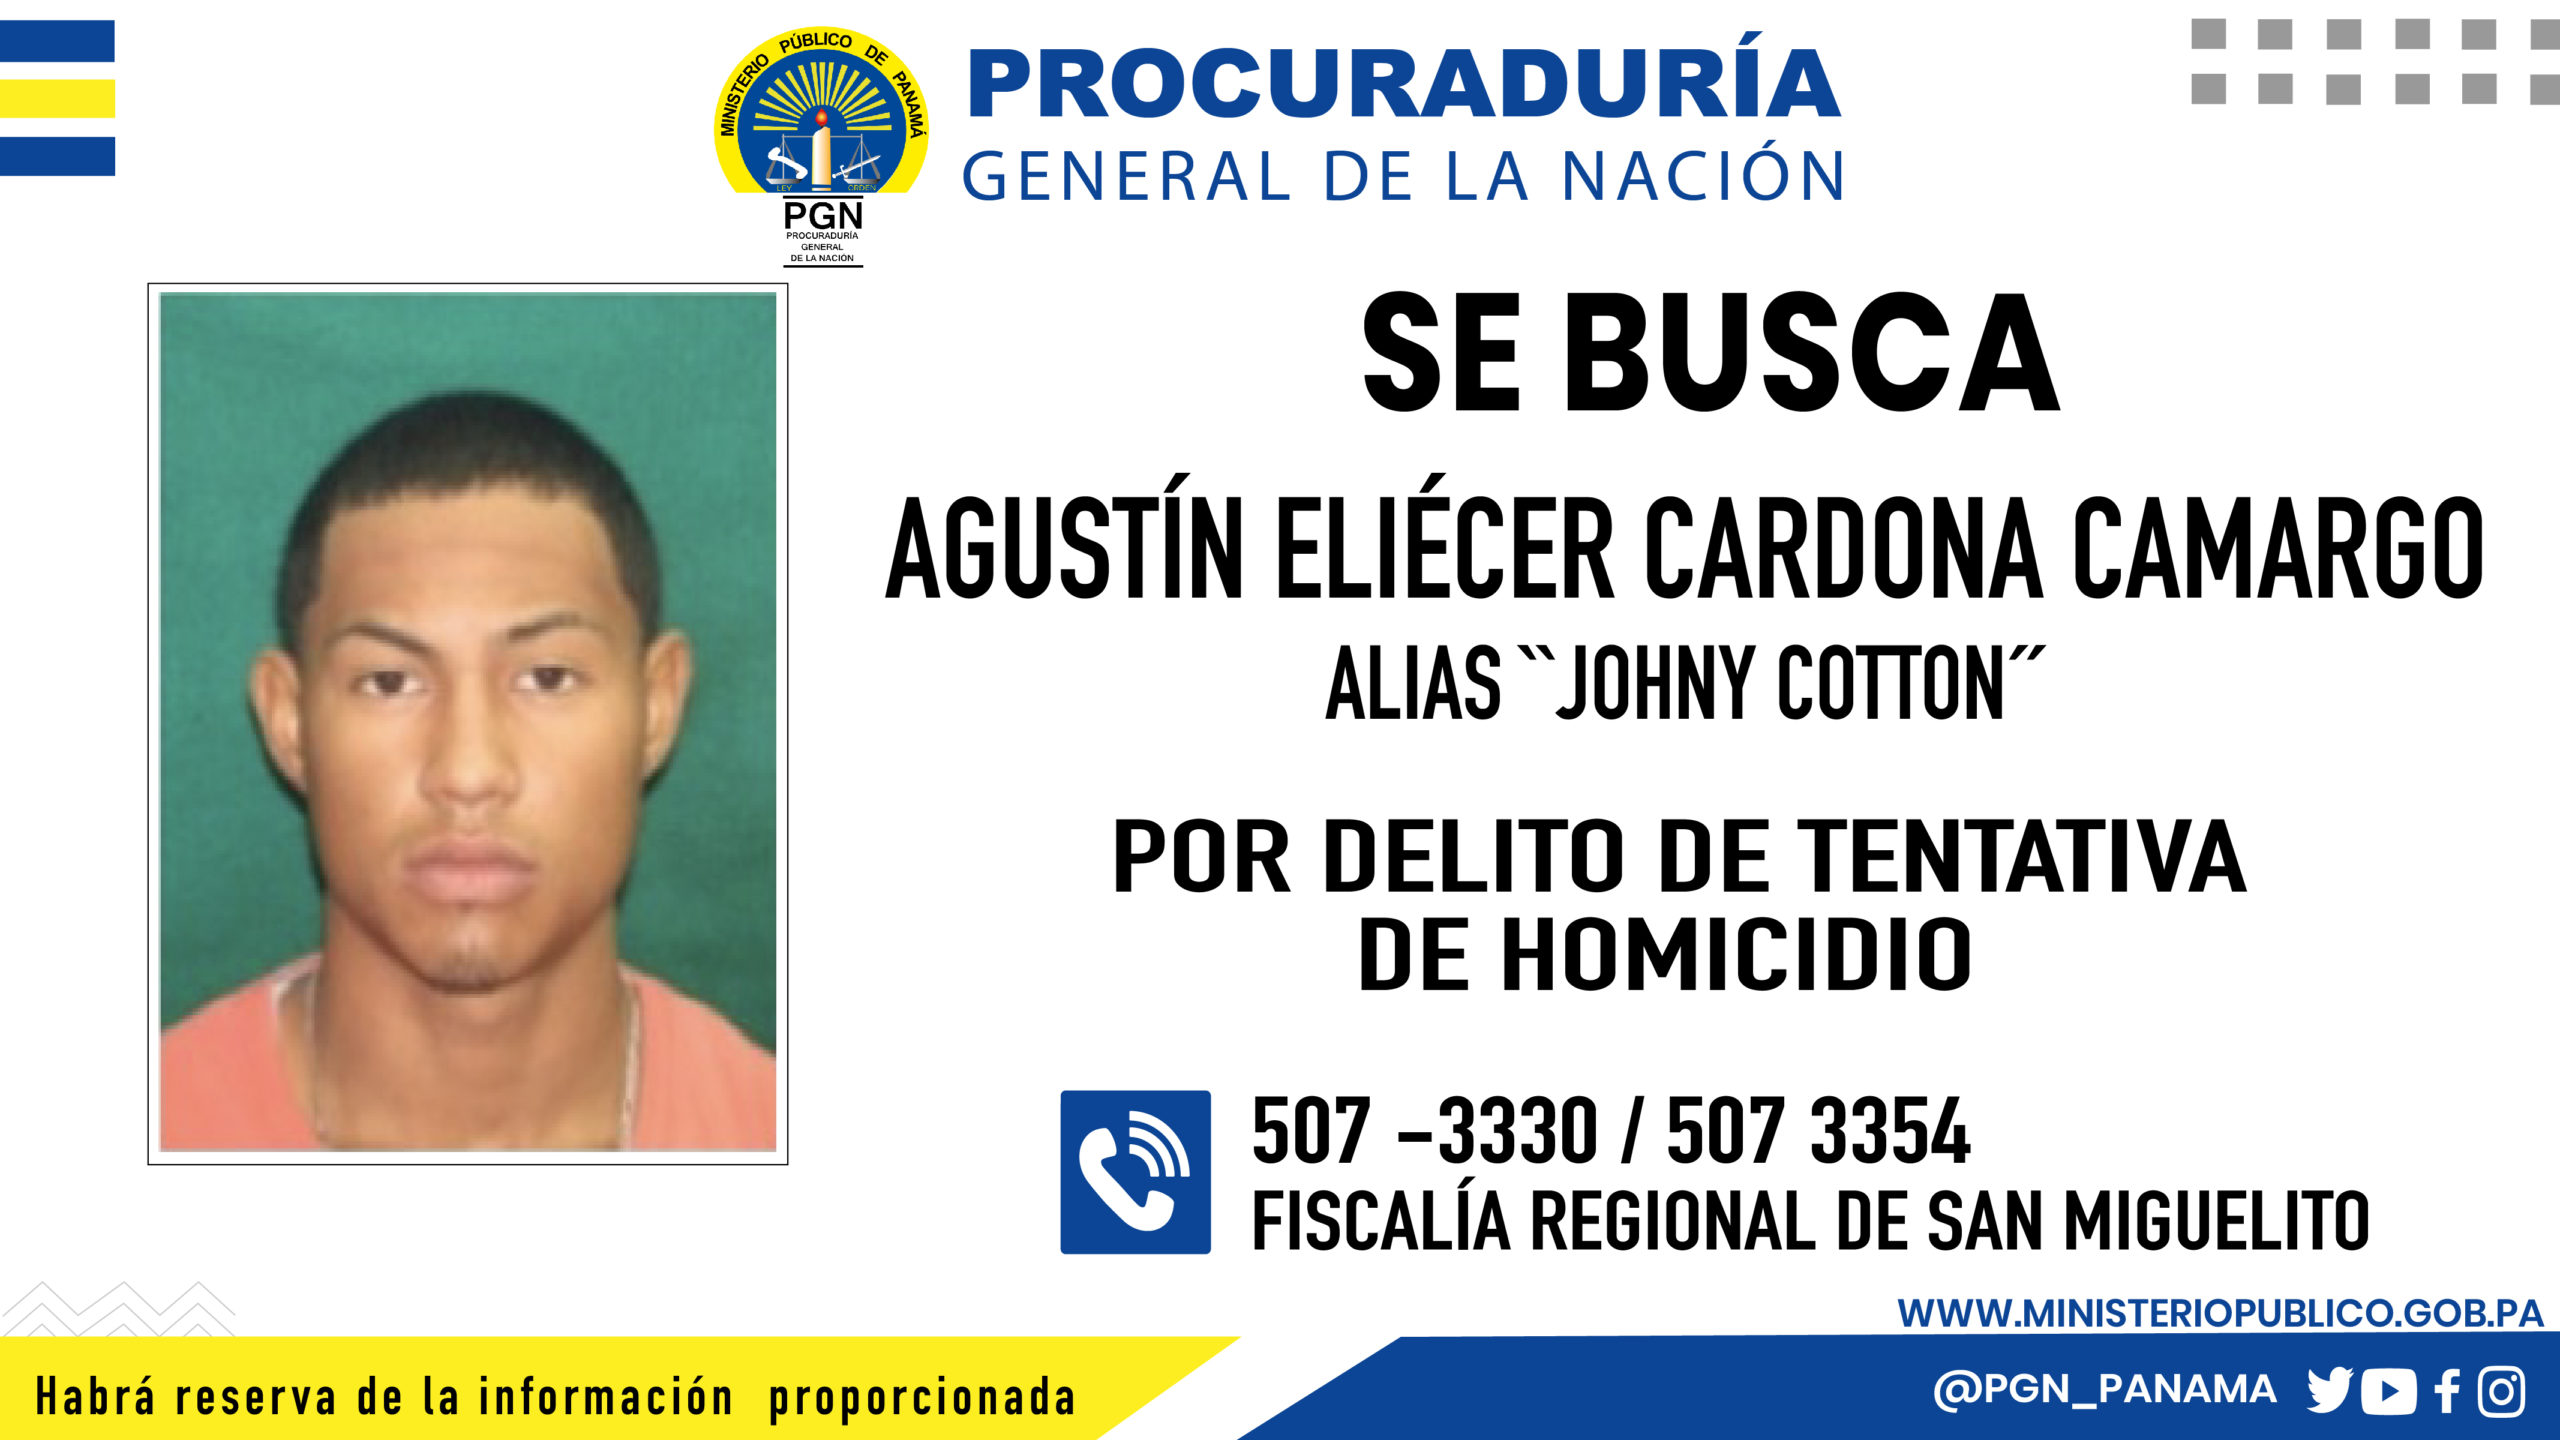 Fiscalía Regional de San Miguelito requiere colaboración ciudadana para ubicar a un hombre vinculado a una tentativa homicidio